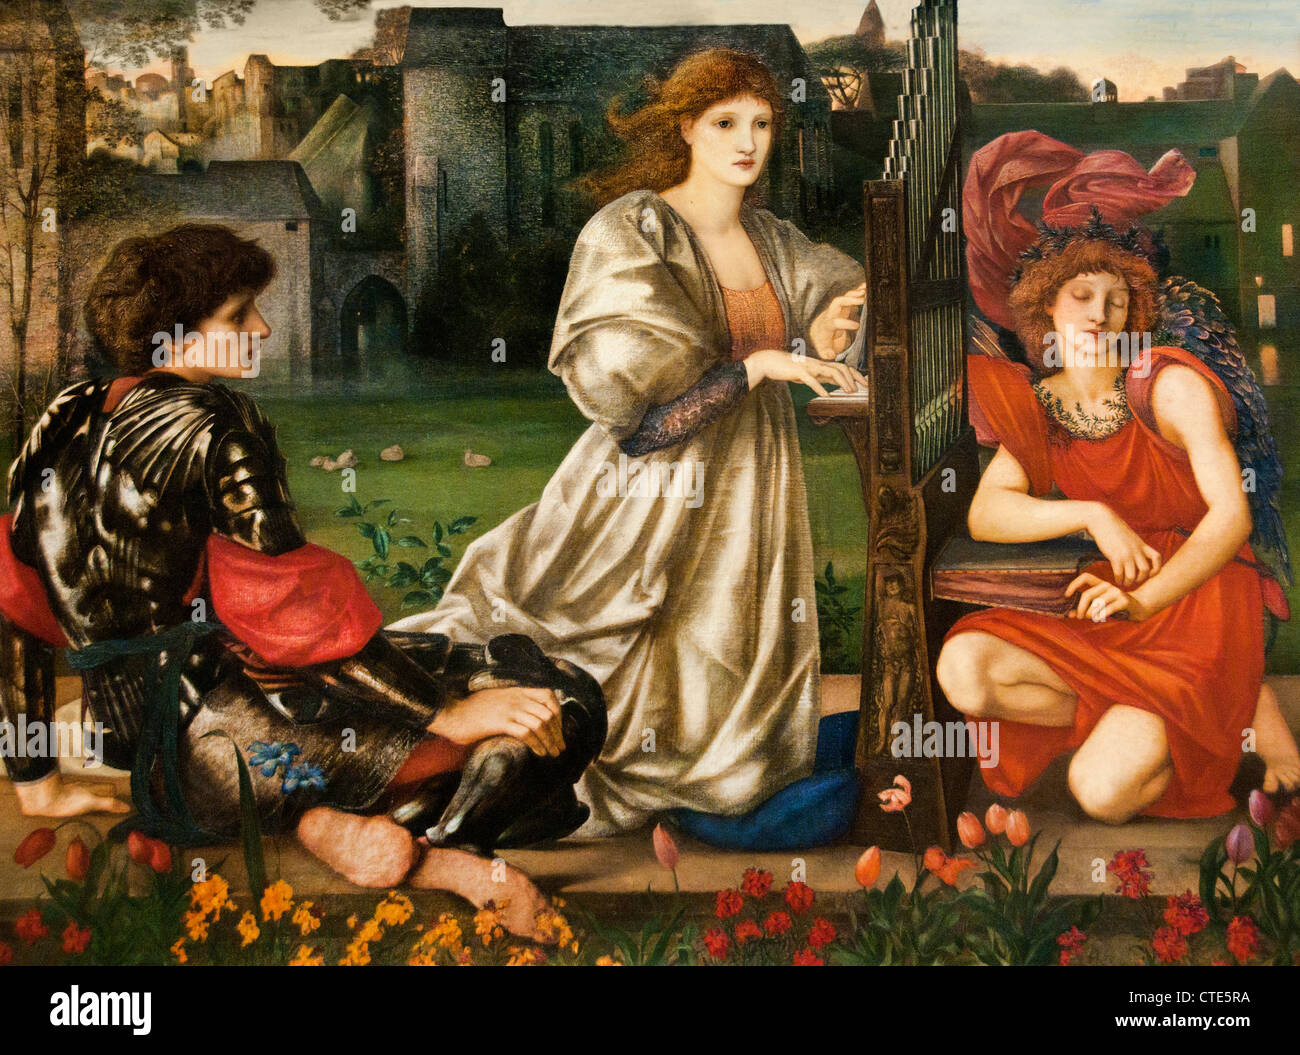 Le chant d'amour 1868-77 par Sir Edward Burne-Jones français 1833-1898 Royaume-Uni Banque D'Images